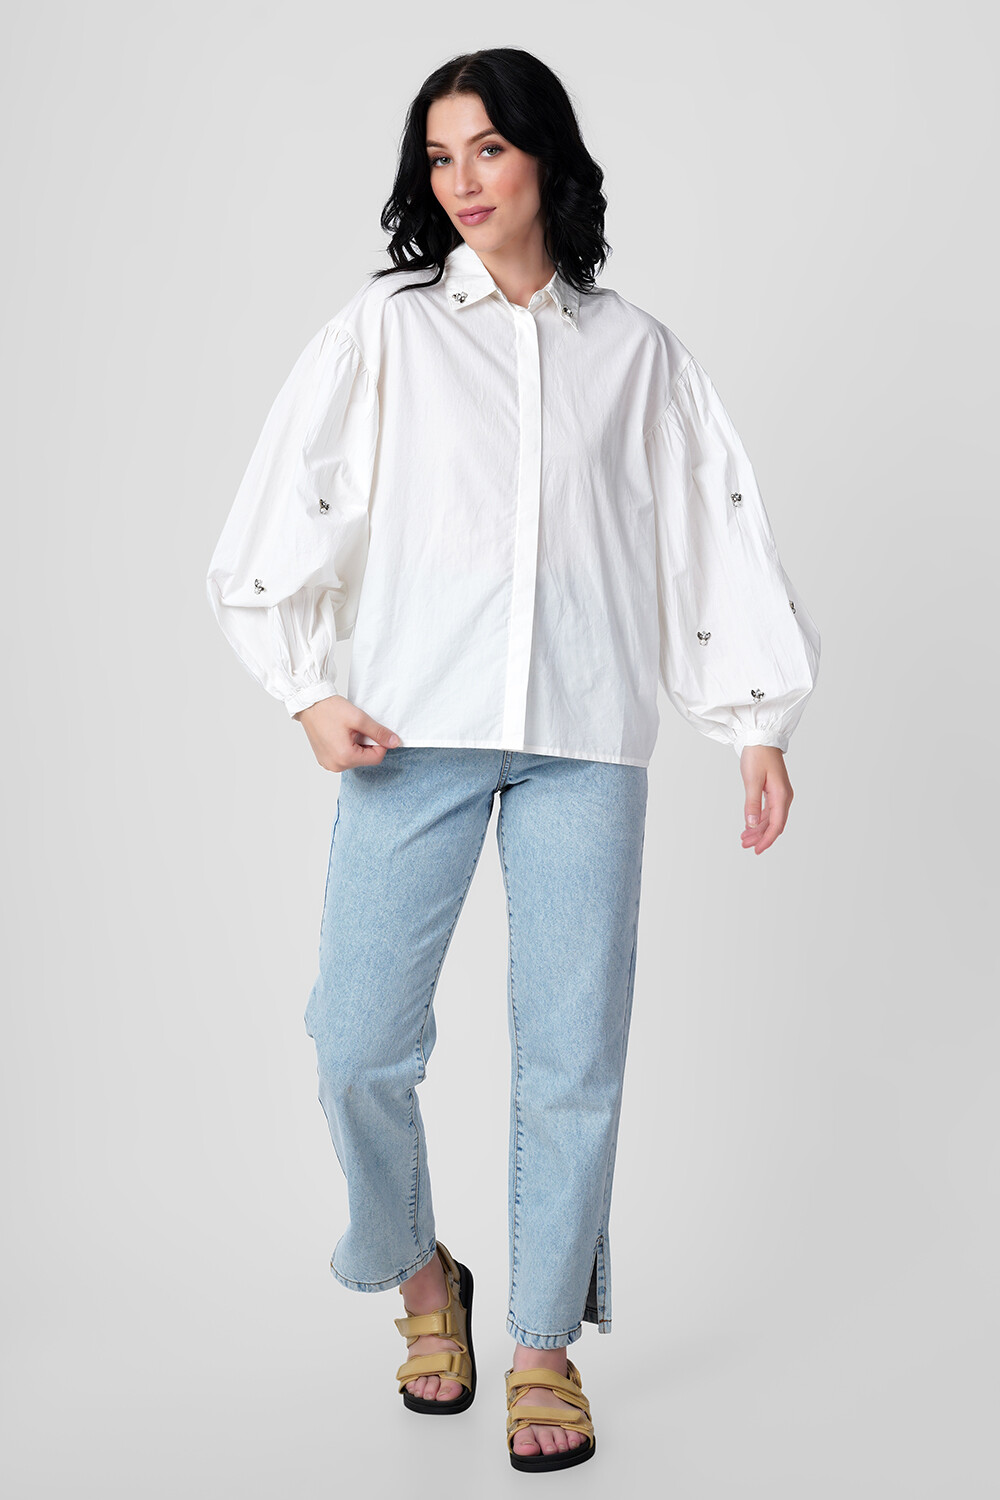 Camisa Darice Marfil / Off White